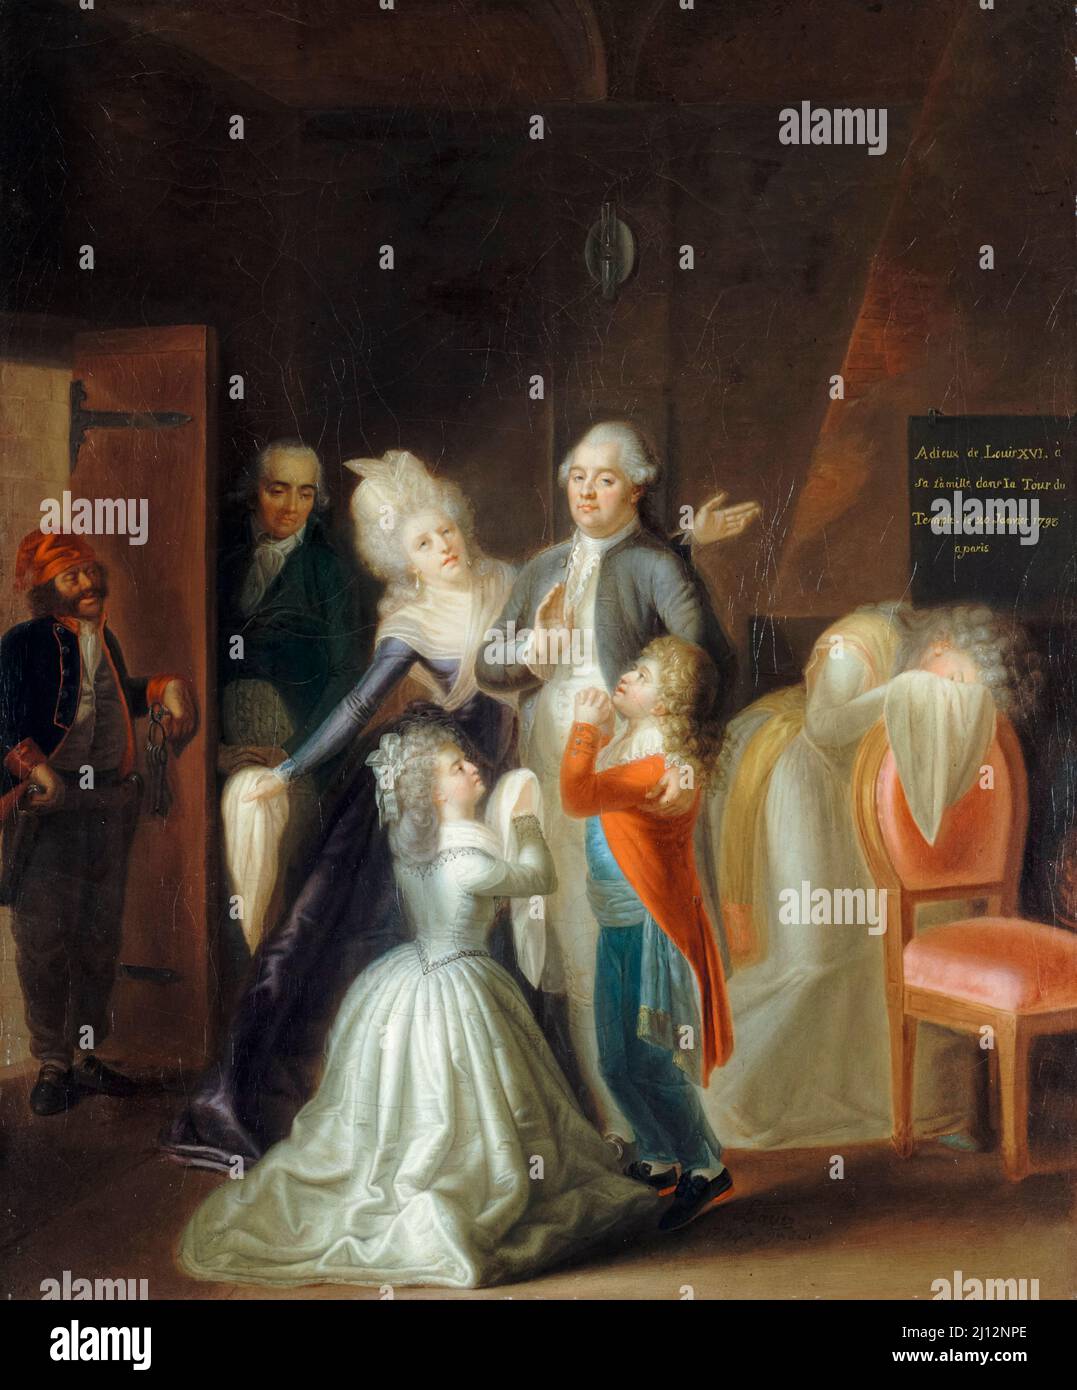 Saluto di Luigi XVI alla sua famiglia nella prigione della Torre del Tempio, 20th 1793 gennaio, dipinto a olio su tela di Jean-Jacques Hauer, 1794 Foto Stock